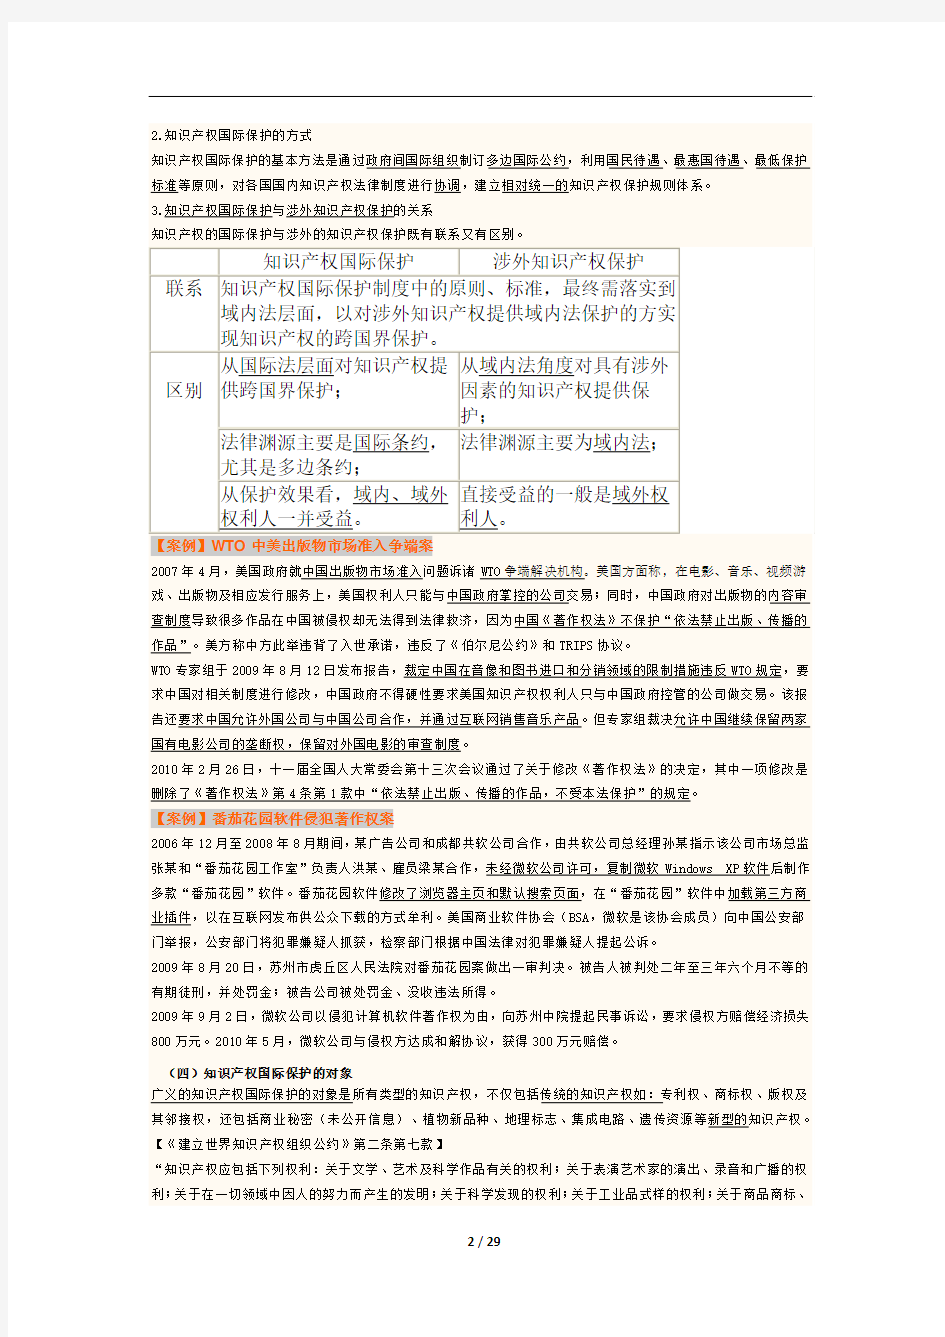 2013江苏知识产权培训-知识产权国际保护(仅供学习)